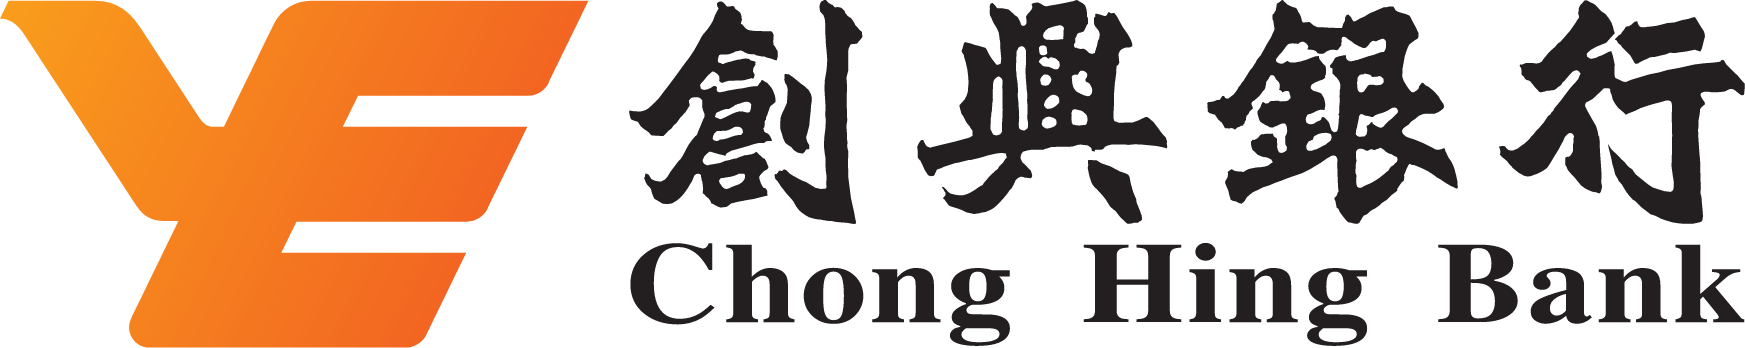 Chong Hing Bank logo large (transparent PNG)